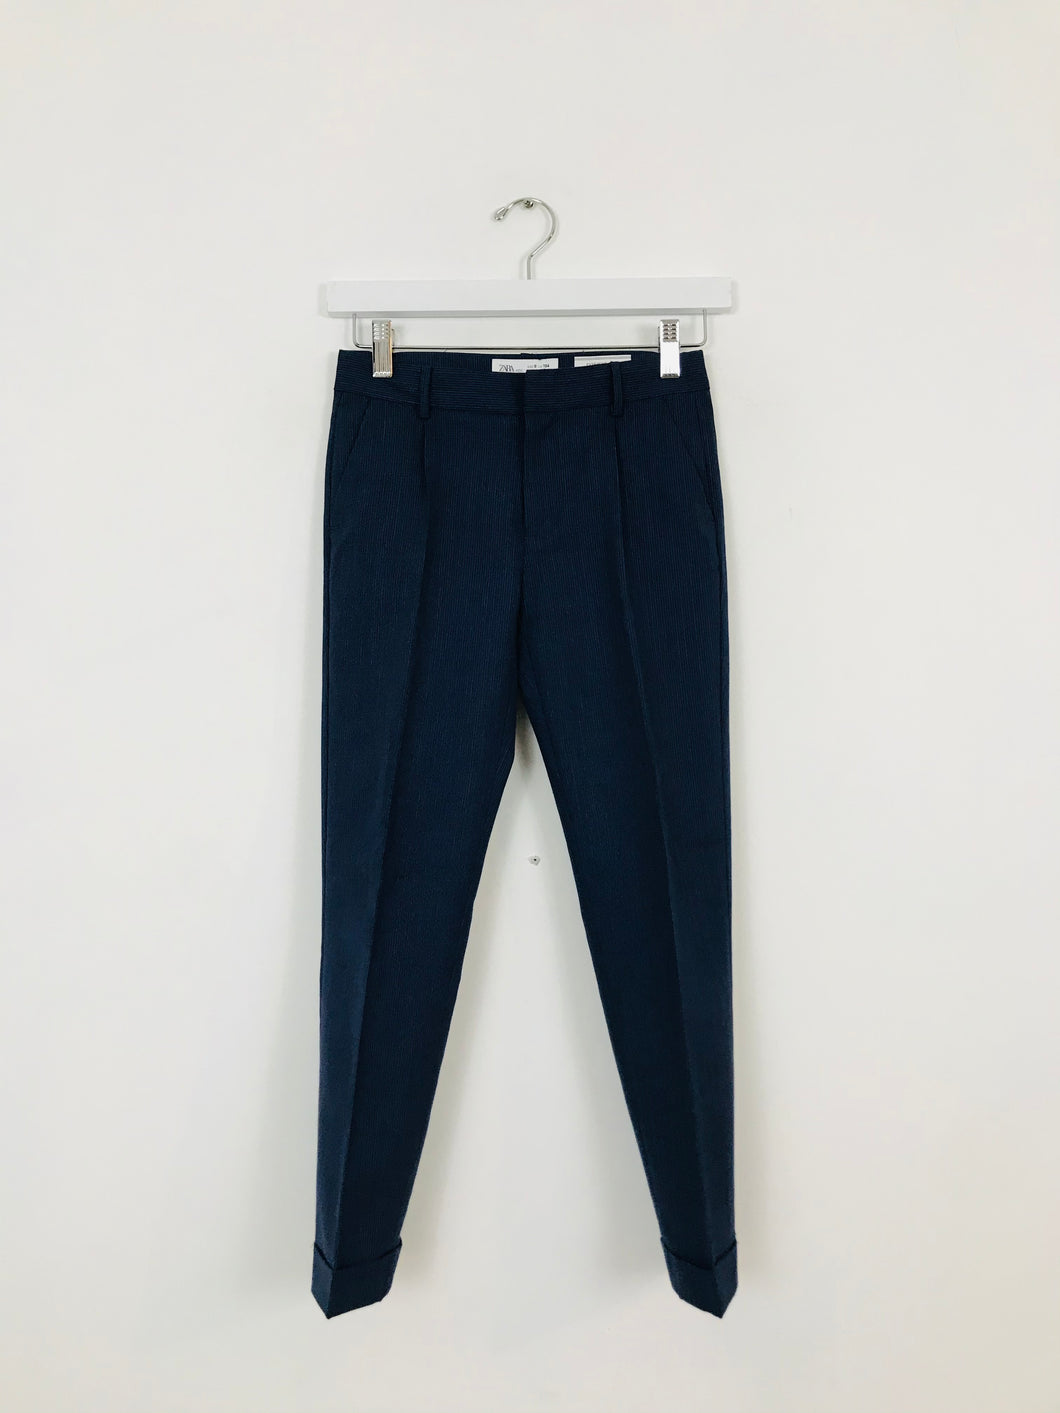 Zara Kid’s Wool Suit Trousers | Age 9 | Blue